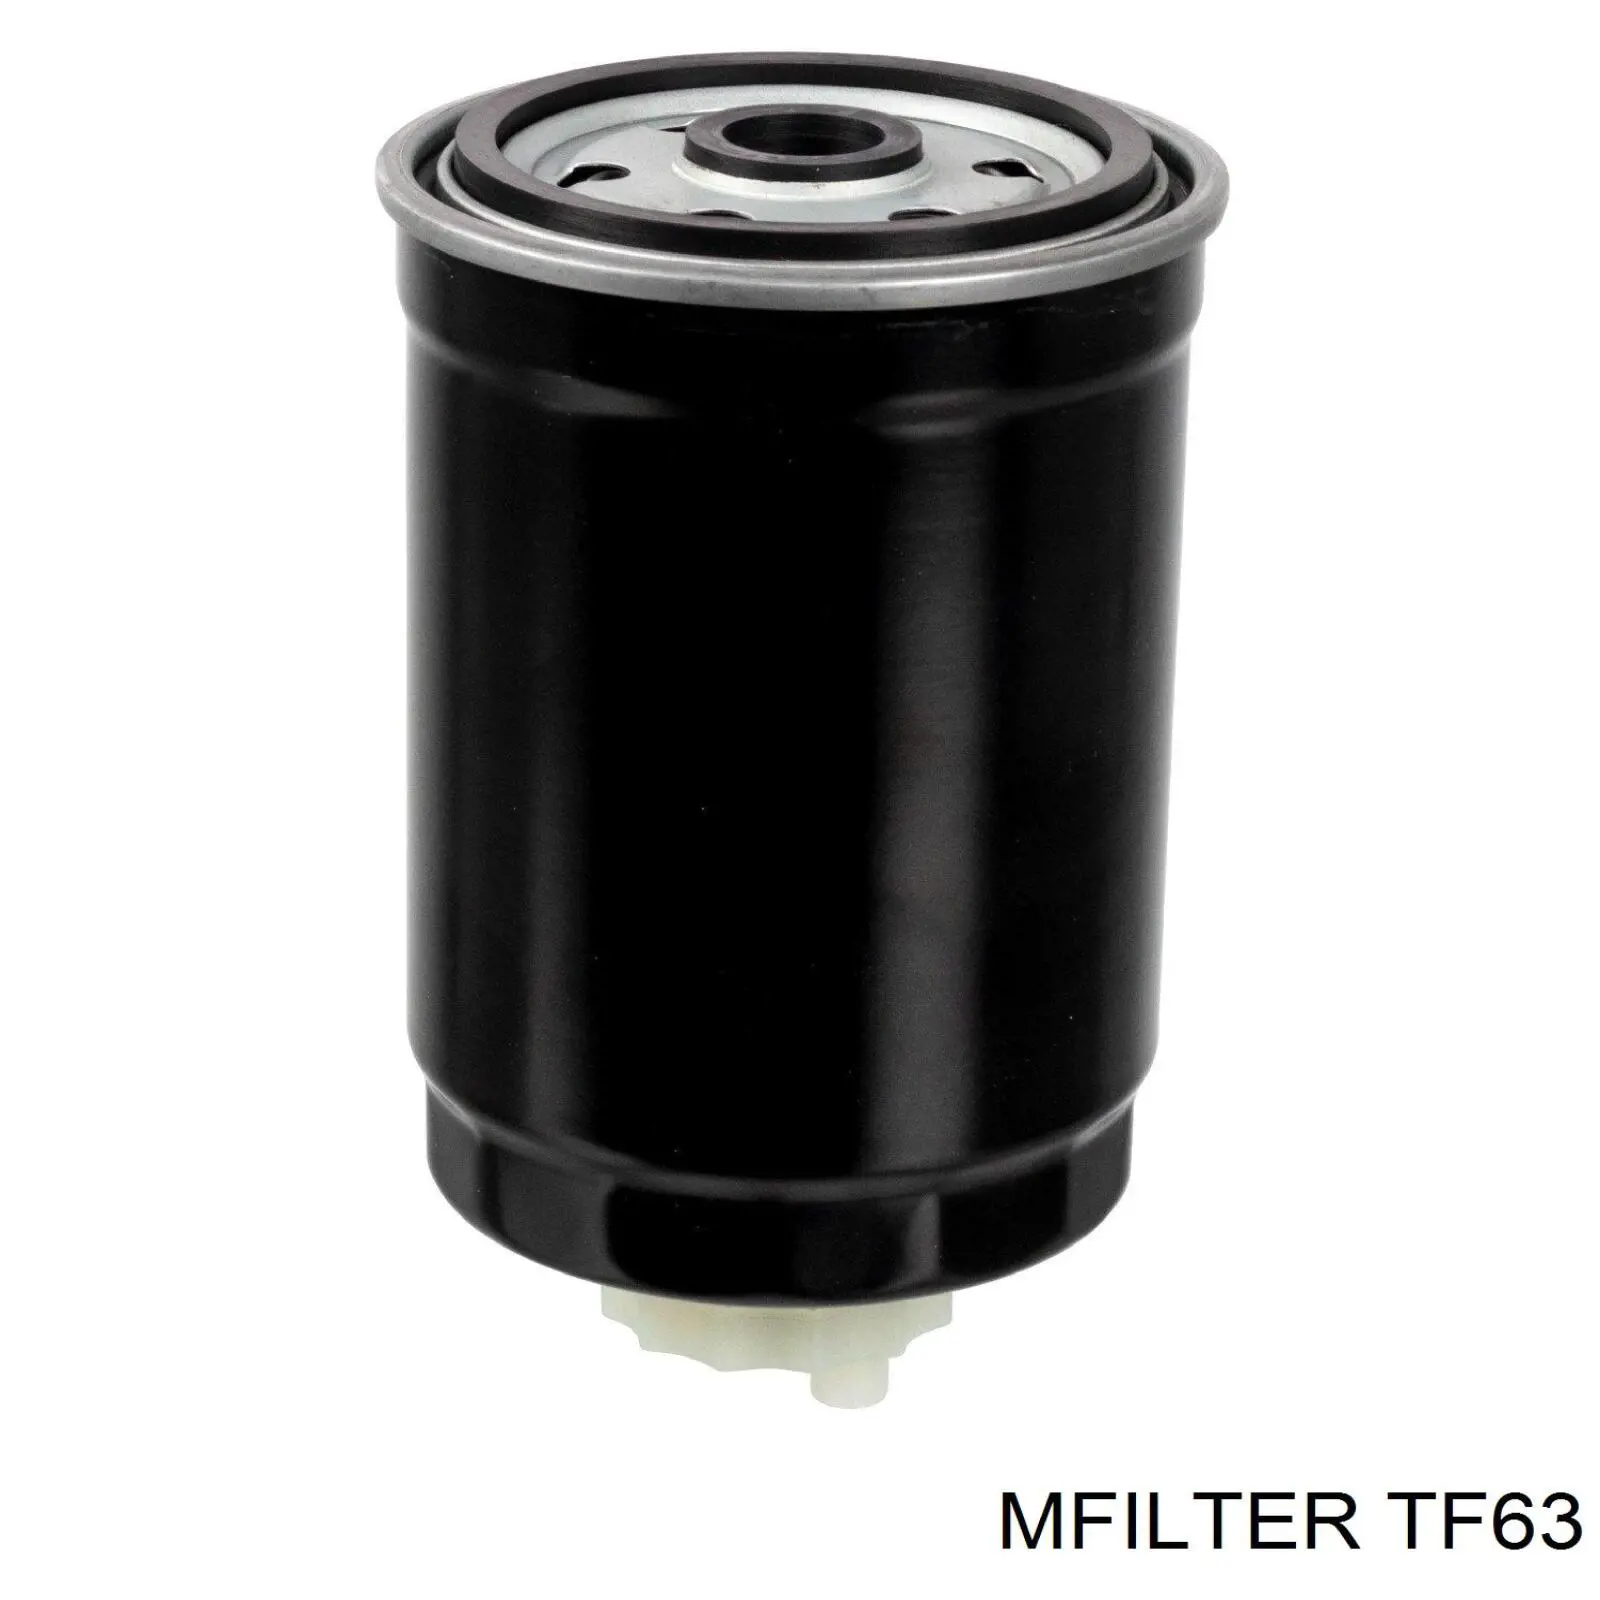 TF63 Mfilter filtro de aceite